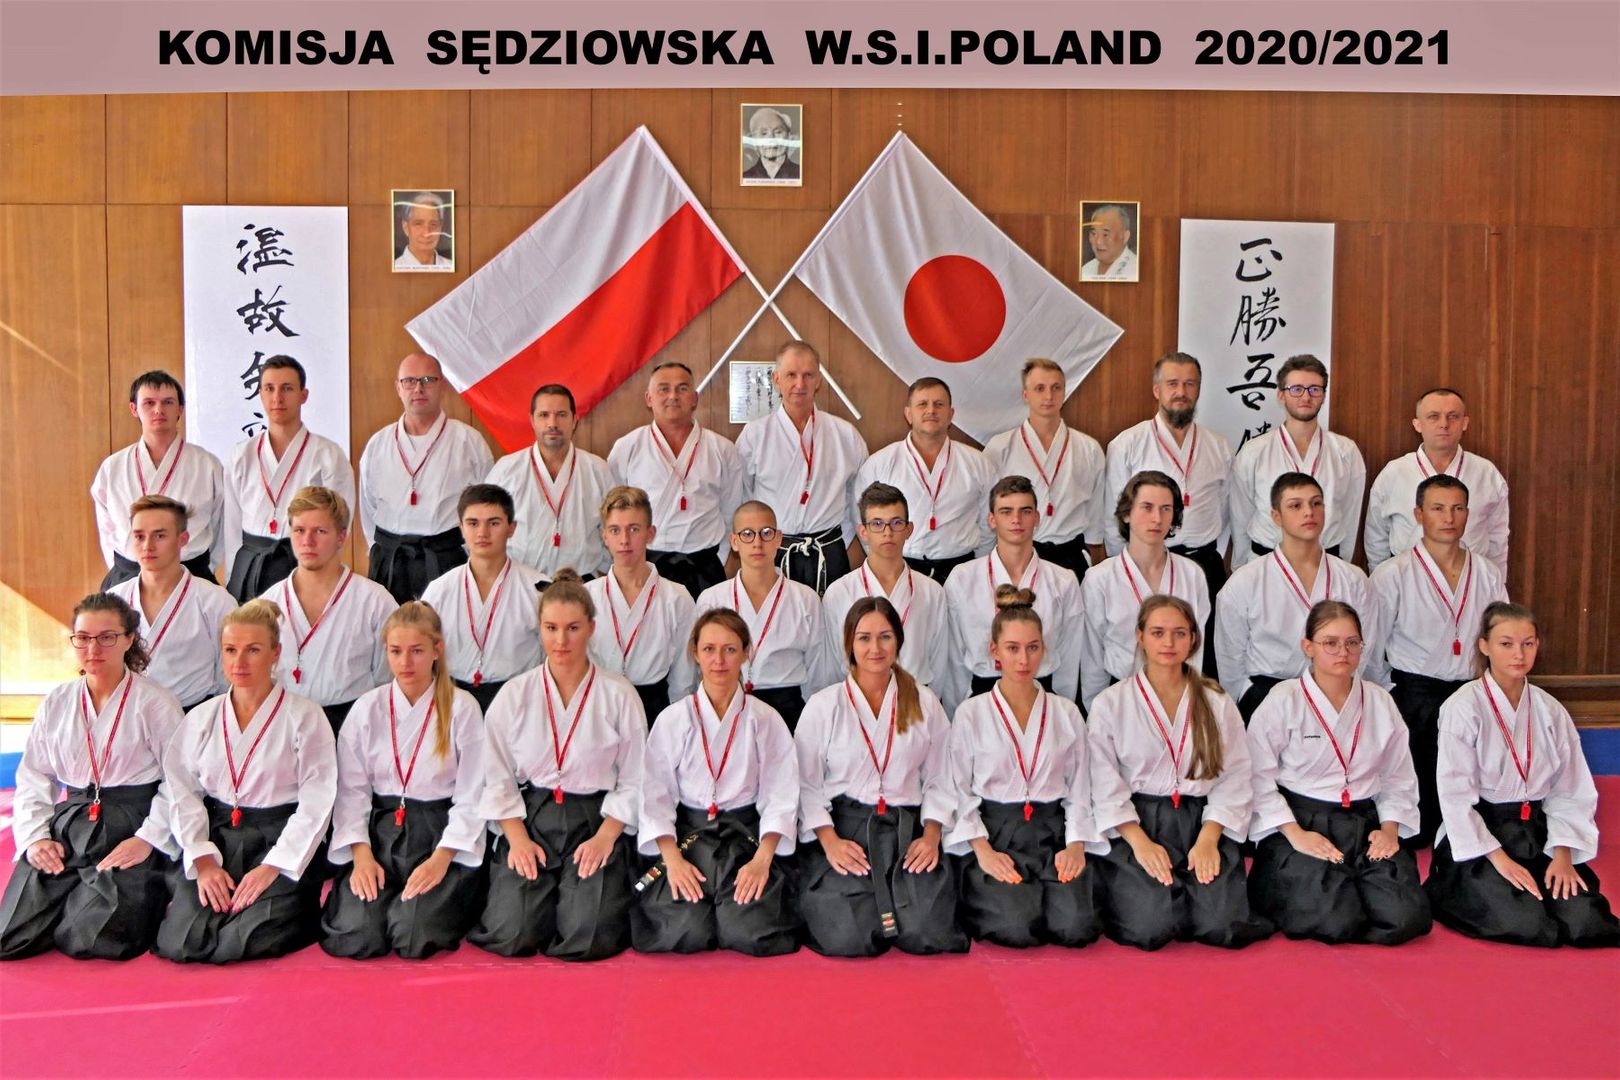 Szkolenie Sędziowskie W.S.I.Poland - "Karate Dojo Meblomor" Czarnków